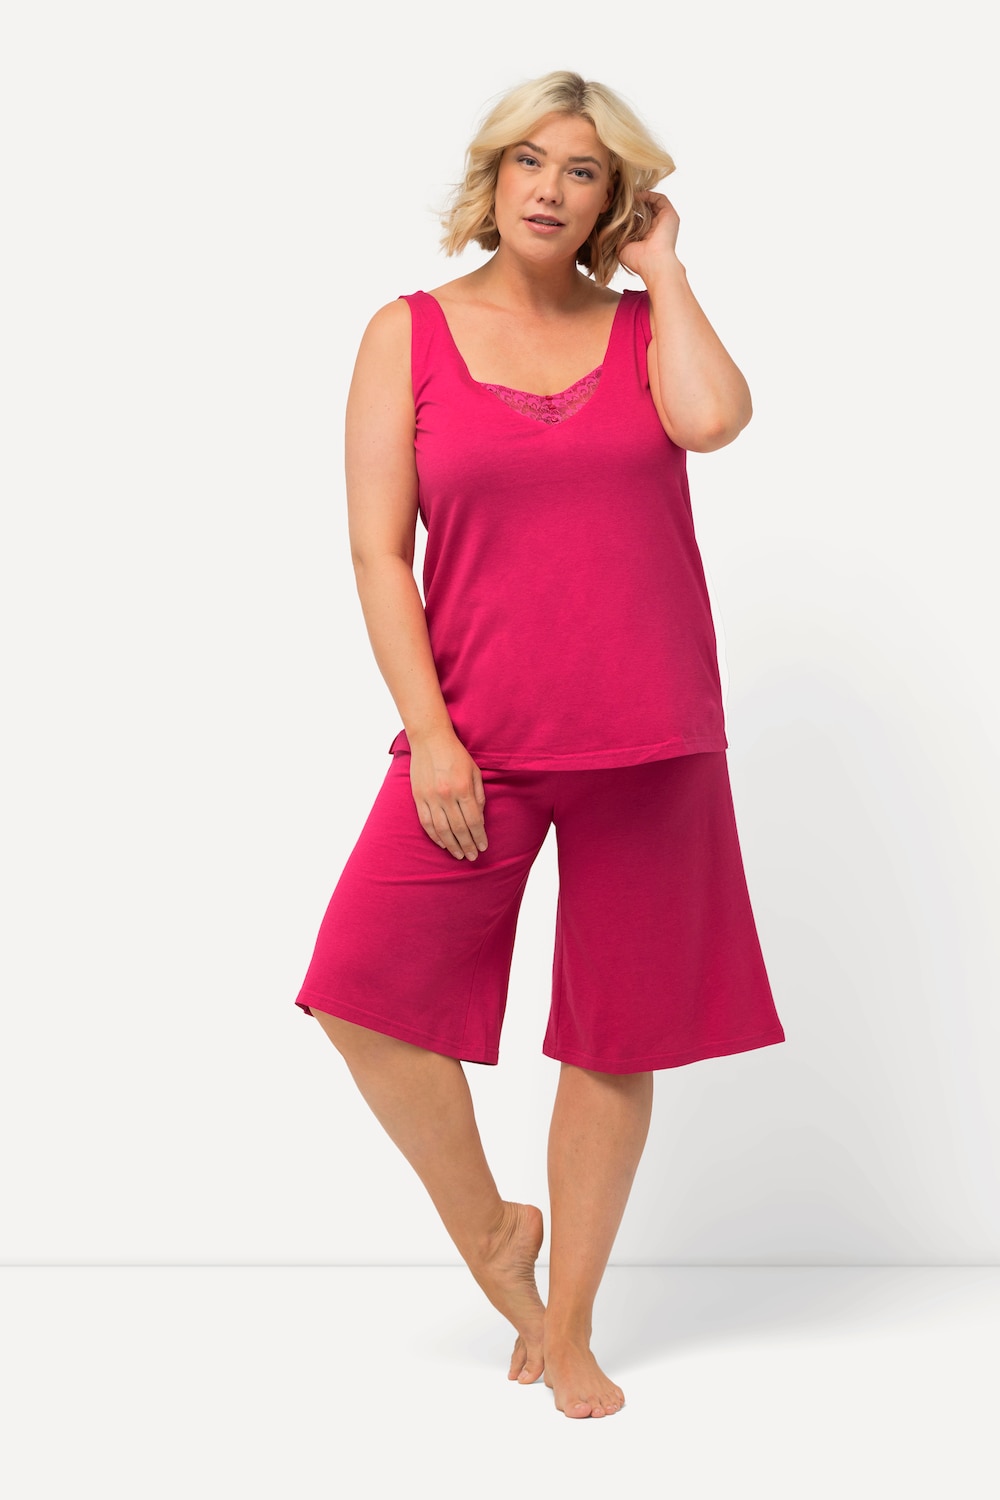 Große Größen Kurzpyjama, Damen, rosa, Größe: 46/48, Baumwolle/Synthetische Fasern, Ulla Popken von Ulla Popken